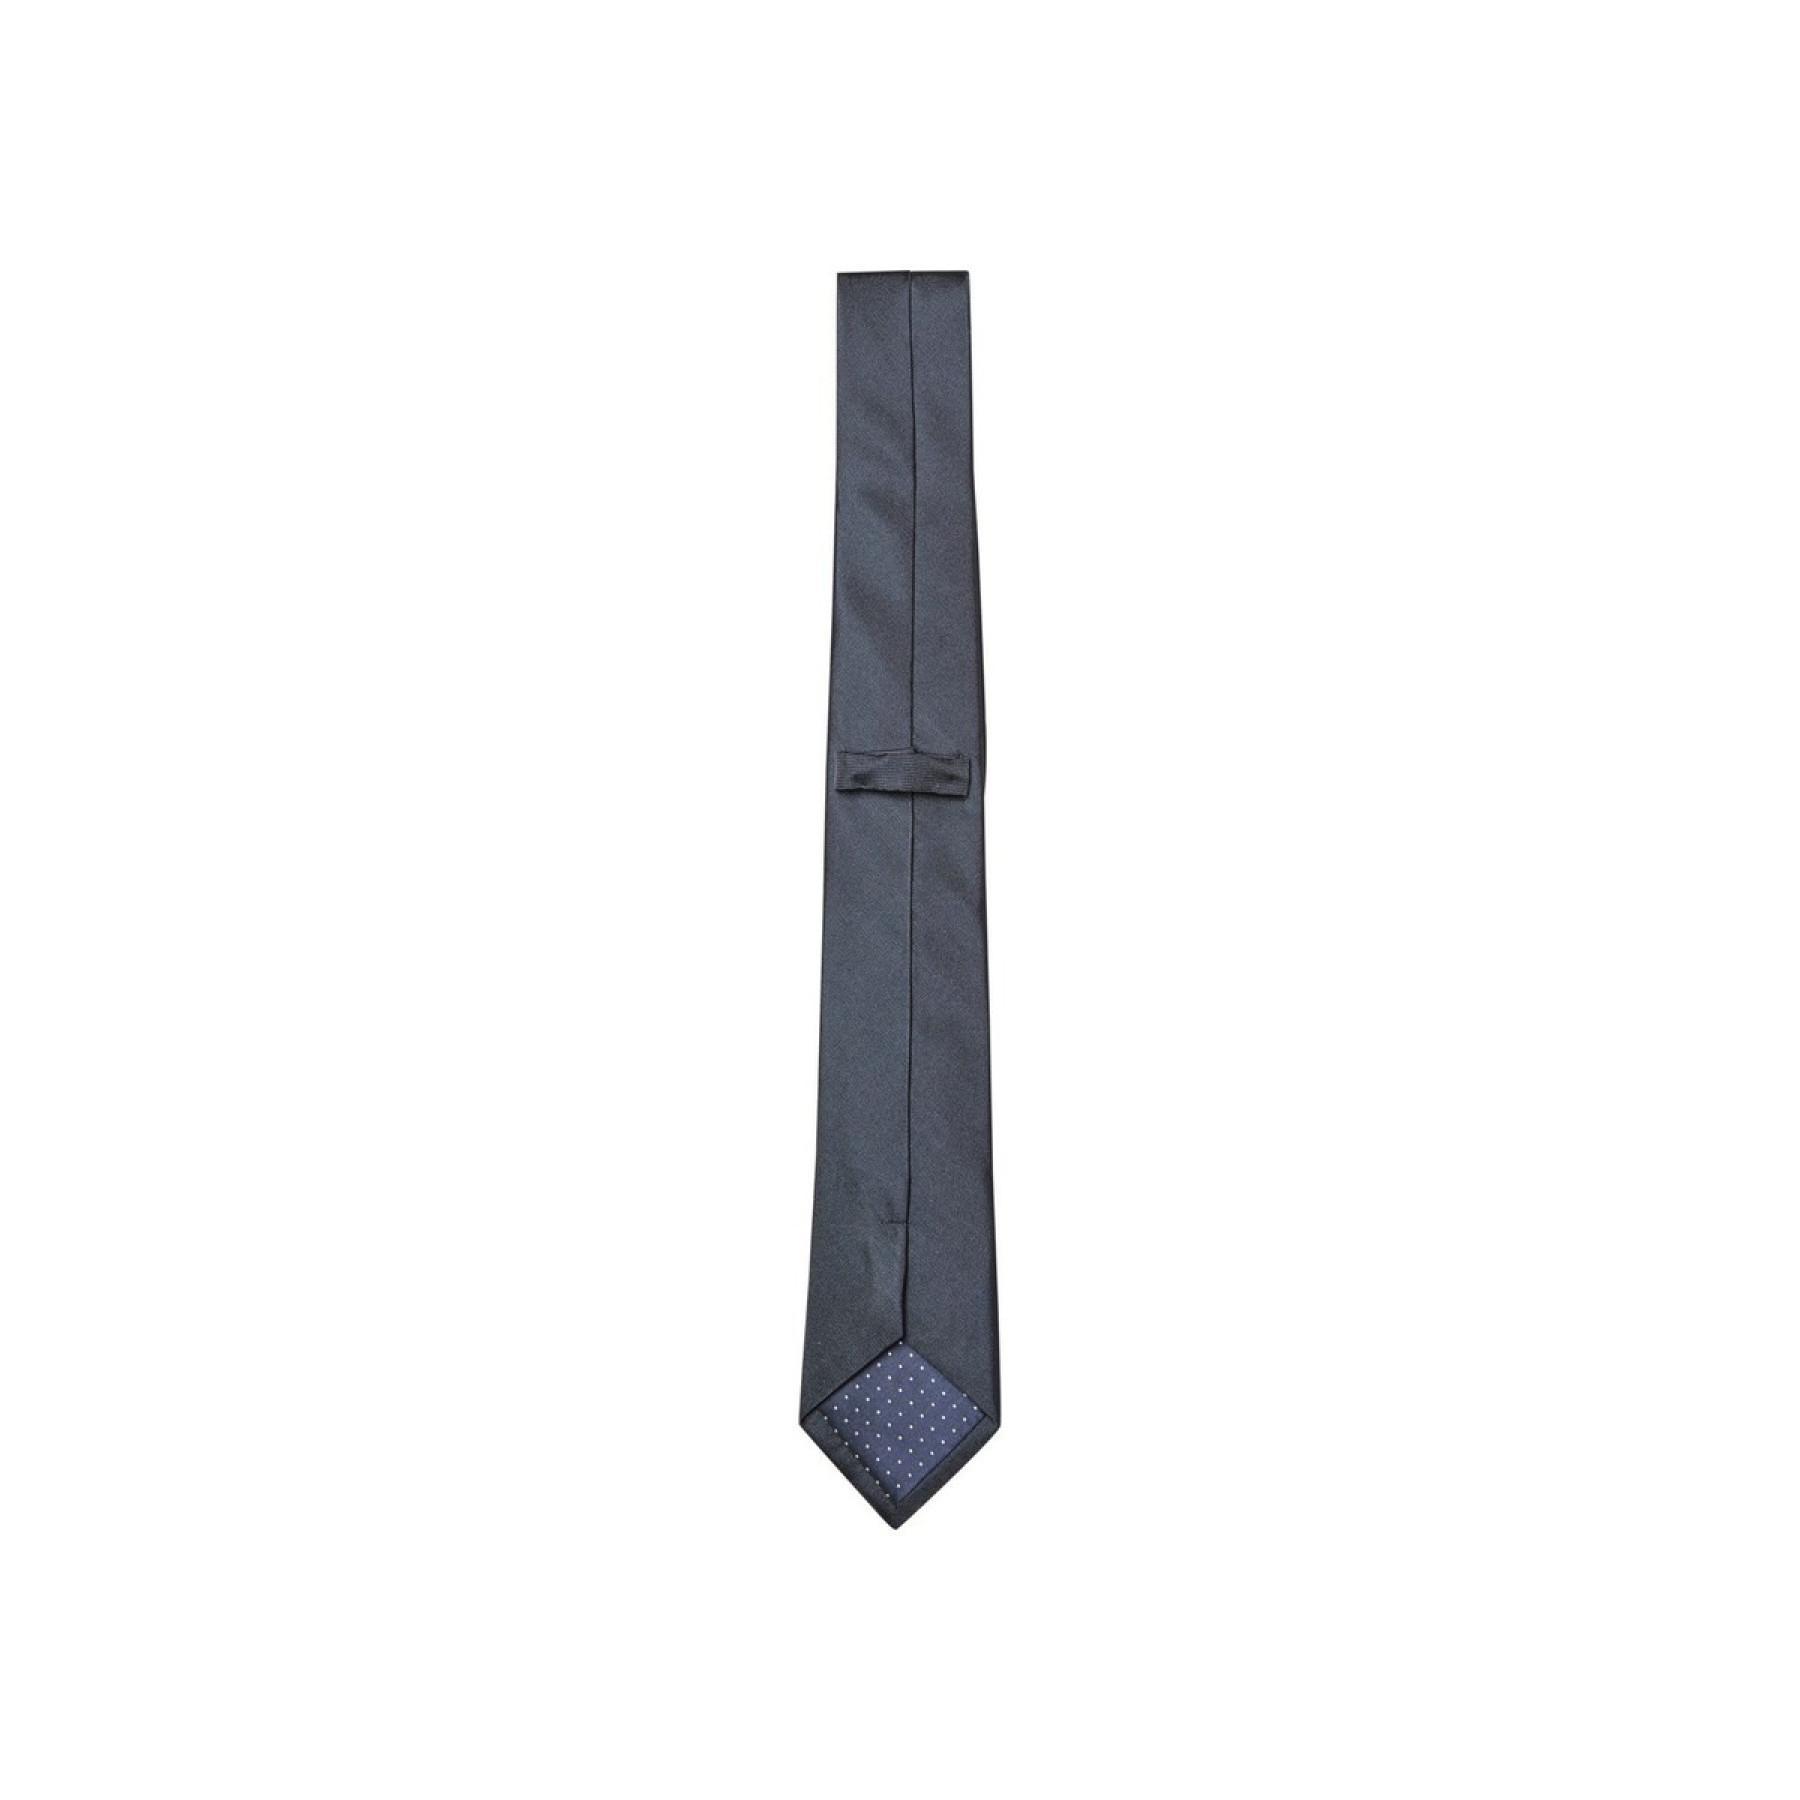 Tie Selected Plain 7cm